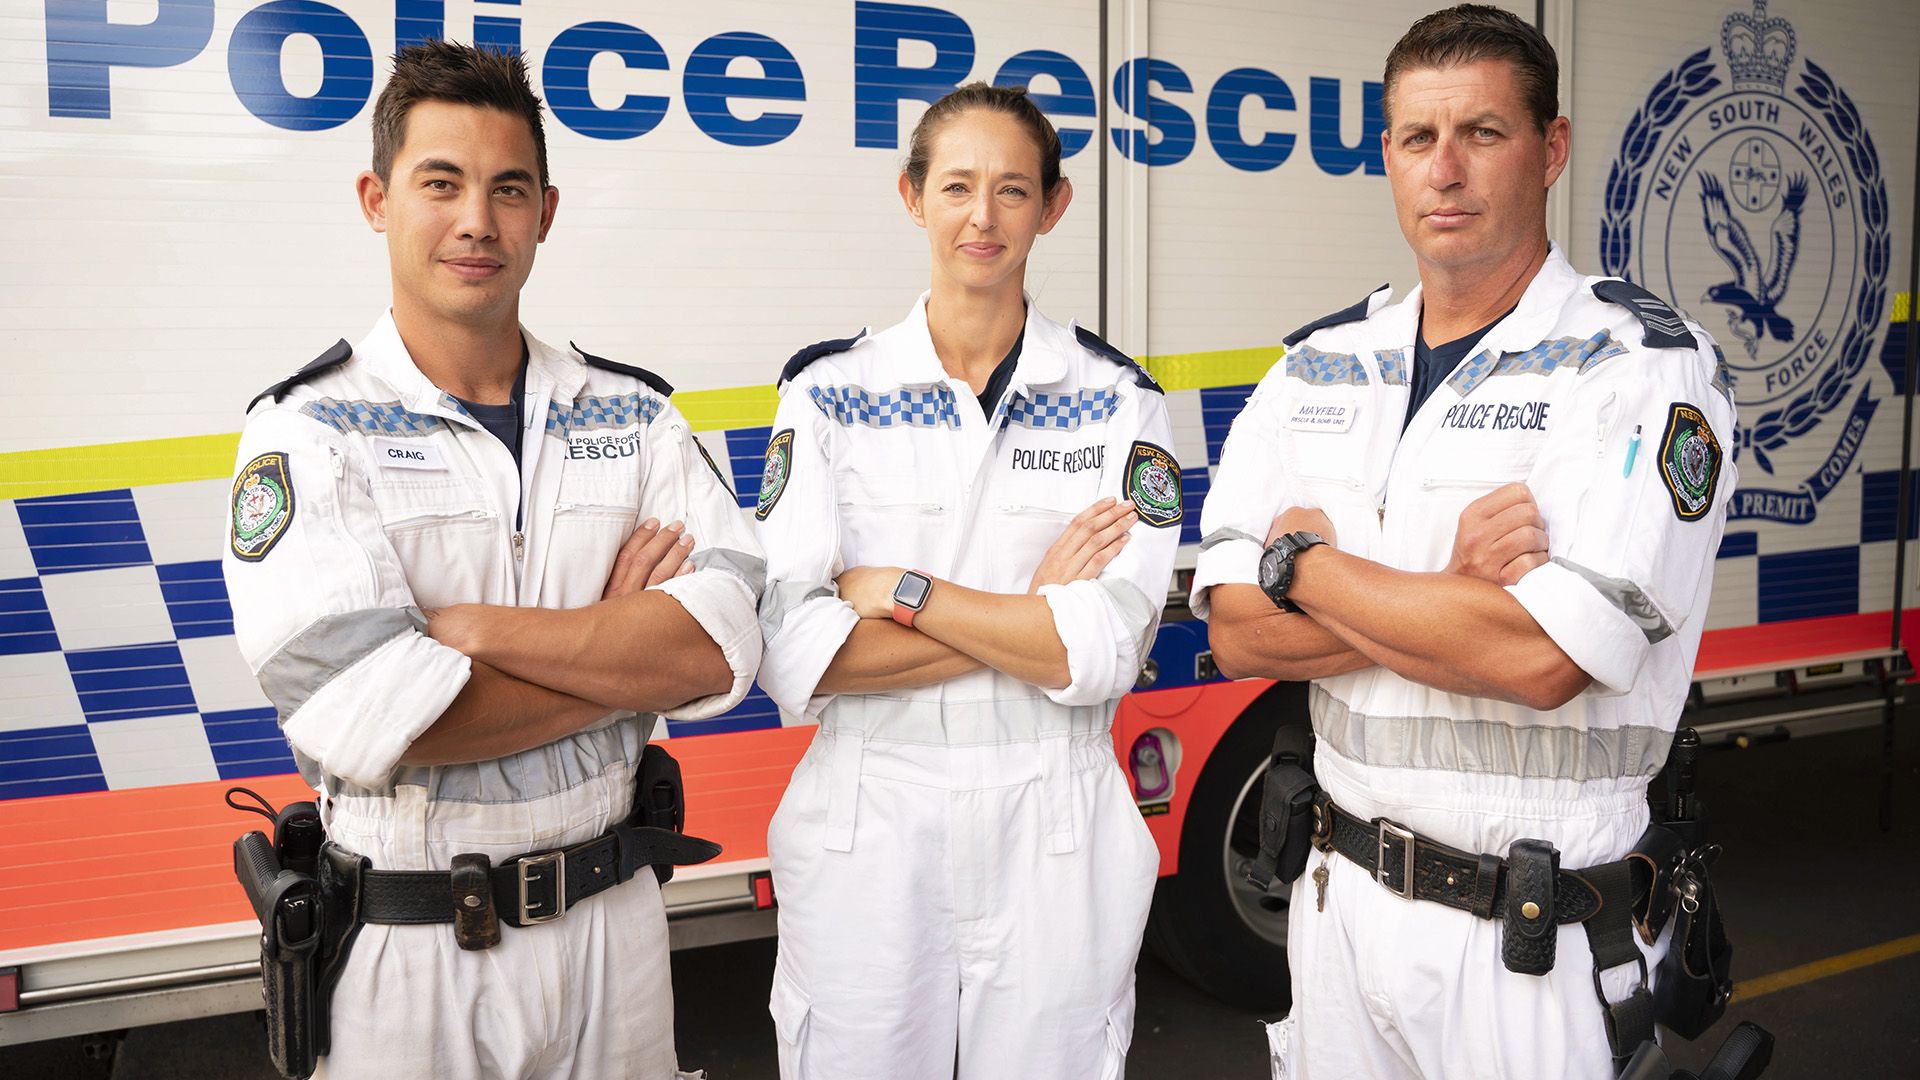 Police Rescue Australia background